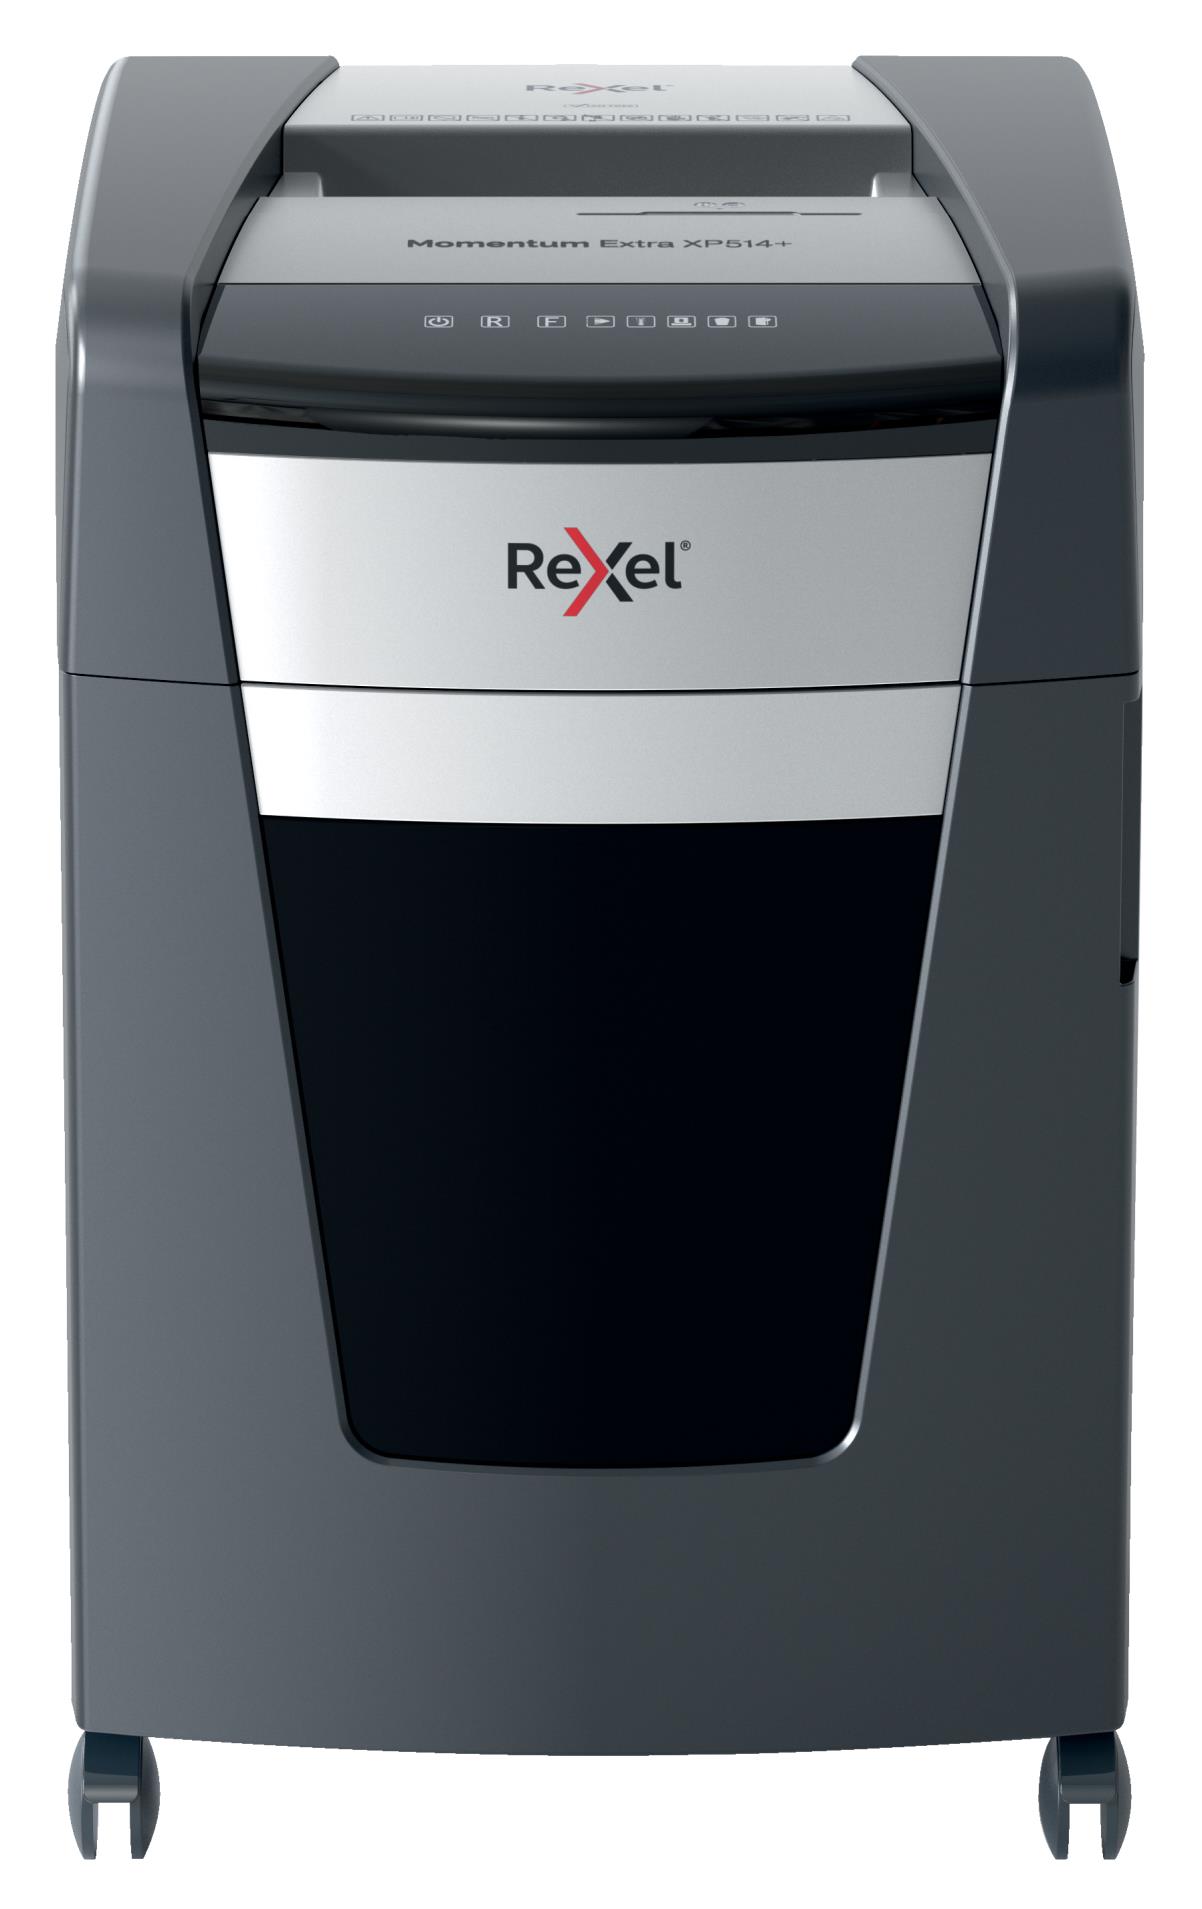 Skartovačka Rexel Momentum Extra XP514+ - P5, řez na mikročástice 2 x 15 mm